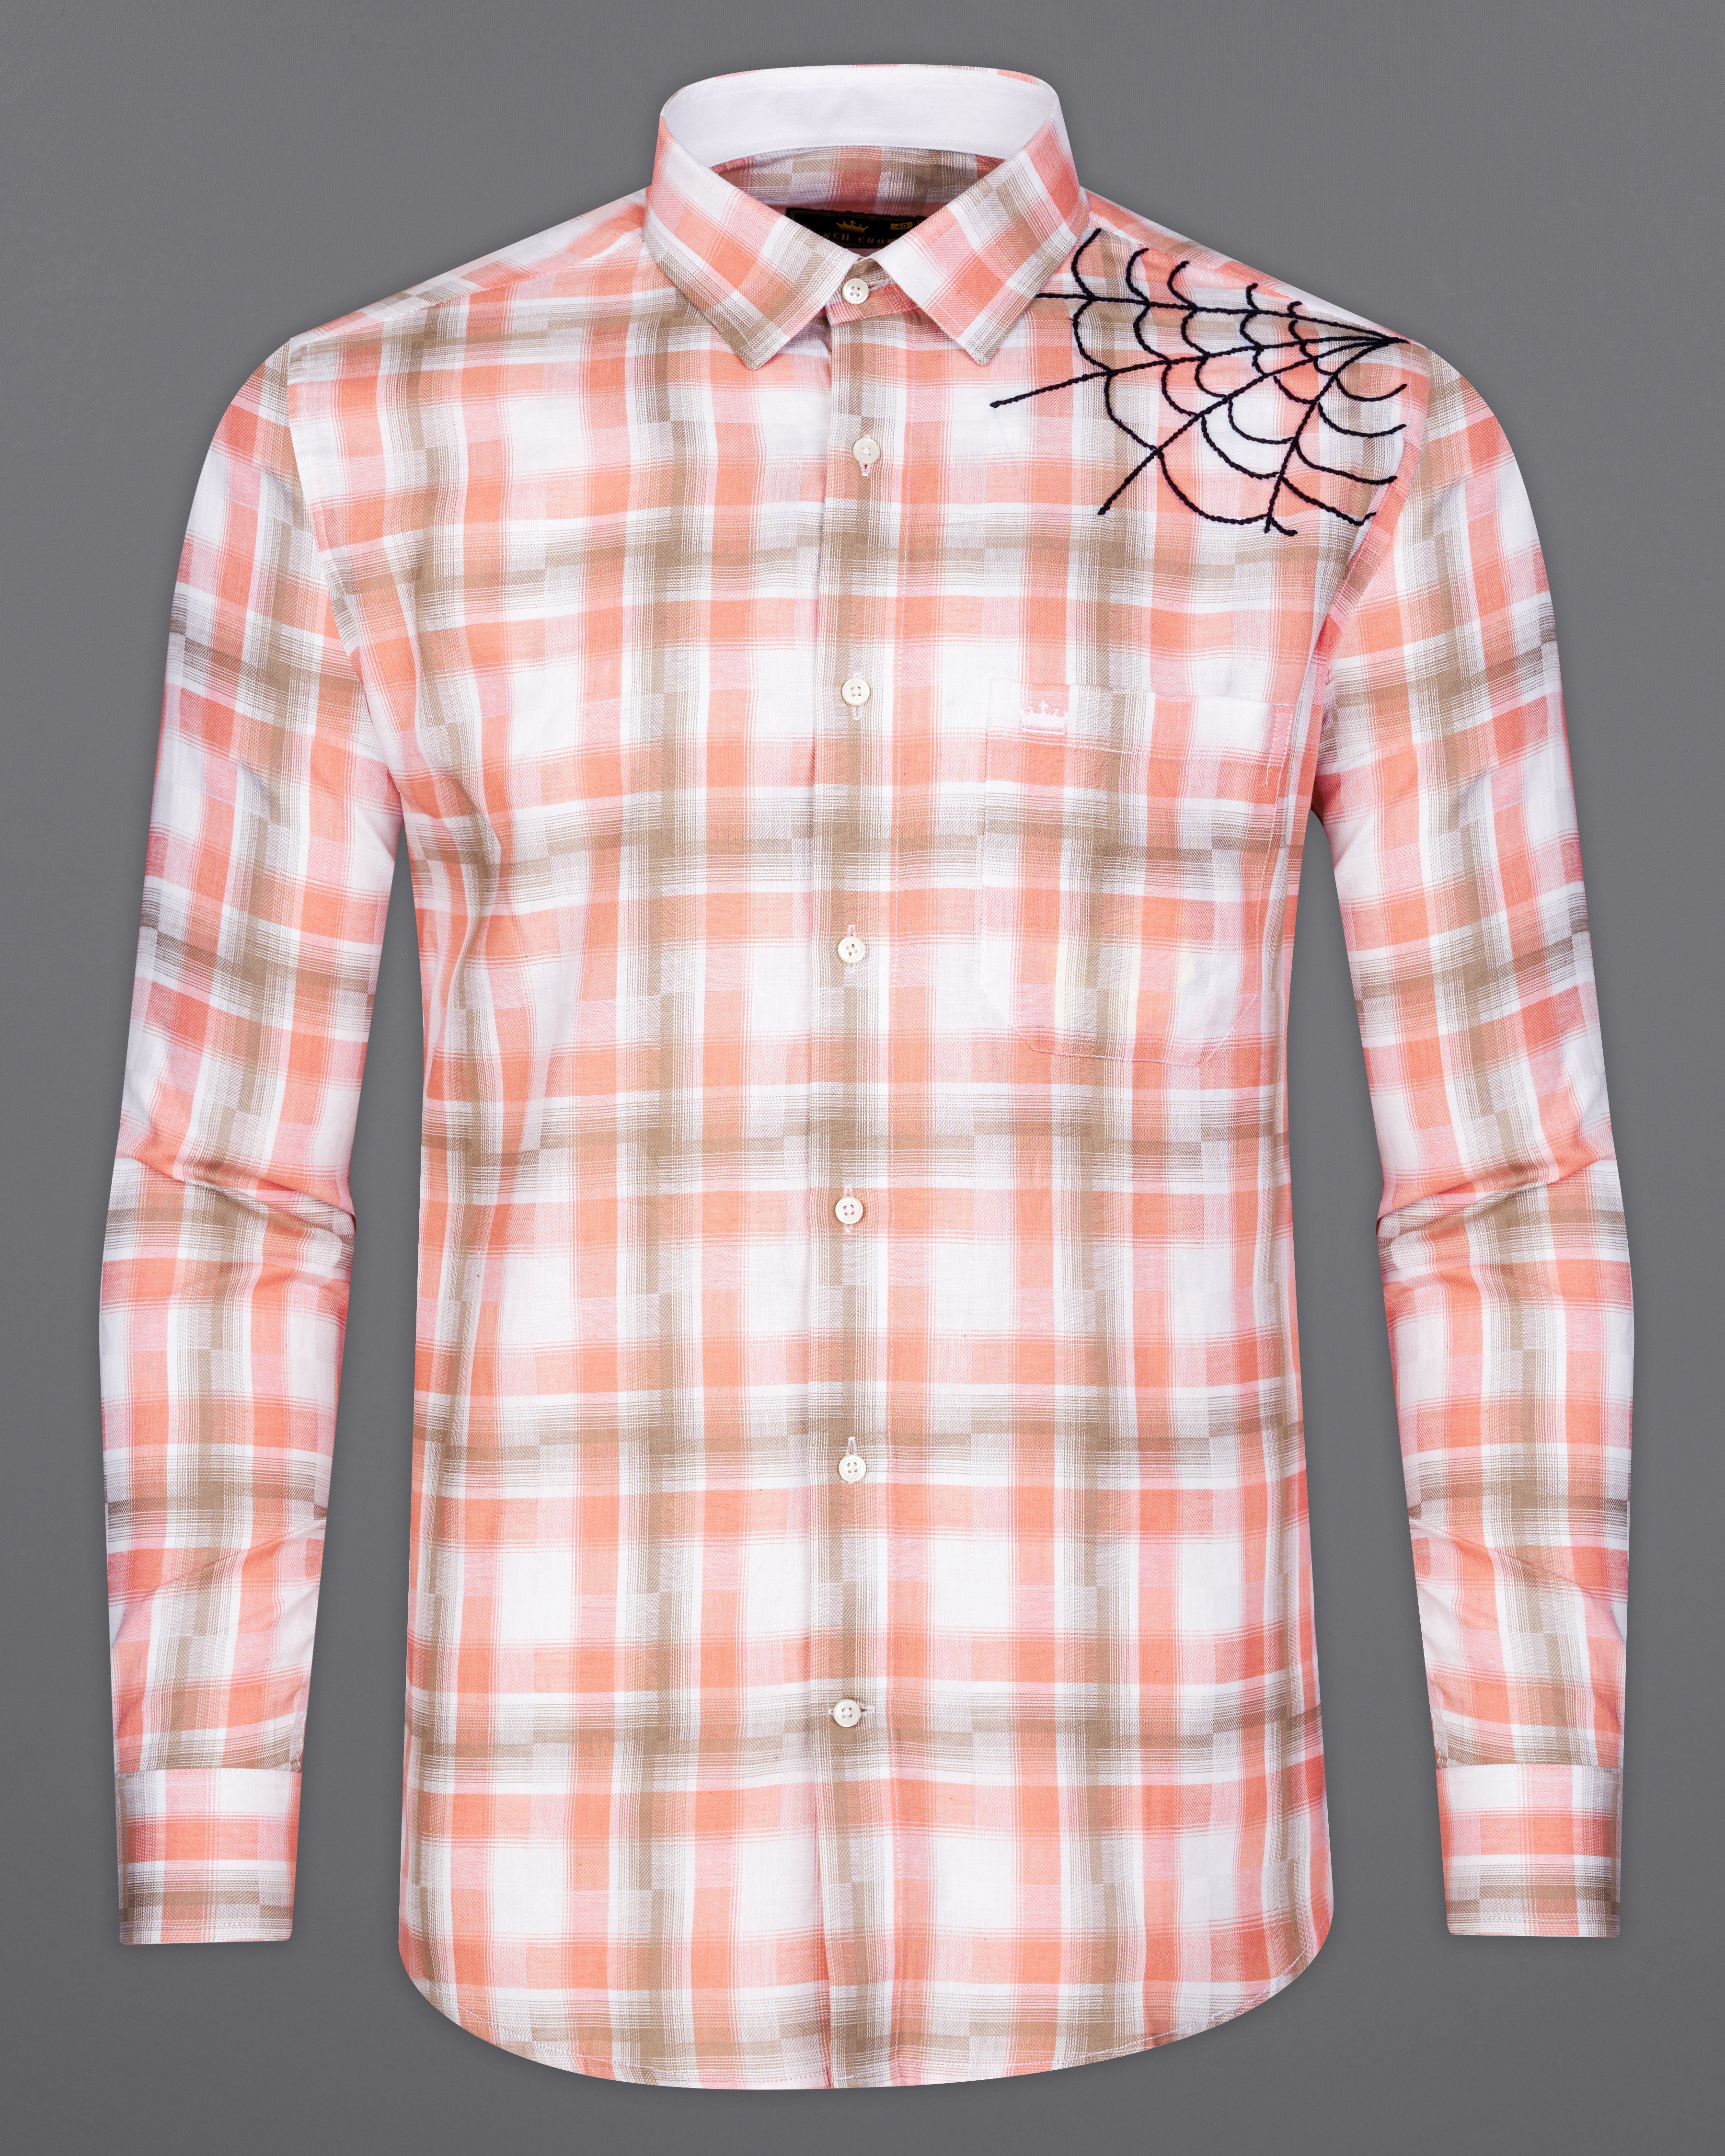 Tangerine Orange with Turkey Brown Checkered Hand Embroidered Work Twill Premium Cotton Designer  Shirt 6288-CP-E063-38, 6288-CP-E063-H-38, 6288-CP-E063-39, 6288-CP-E063-H-39, 6288-CP-E063-40, 6288-CP-E063-H-40, 6288-CP-E063-42, 6288-CP-E063-H-42, 6288-CP-E063-44, 6288-CP-E063-H-44, 6288-CP-E063-46, 6288-CP-E063-H-46, 6288-CP-E063-48, 6288-CP-E063-H-48, 6288-CP-E063-50, 6288-CP-E063-H-50, 6288-CP-E063-52, 6288-CP-E063-H-52